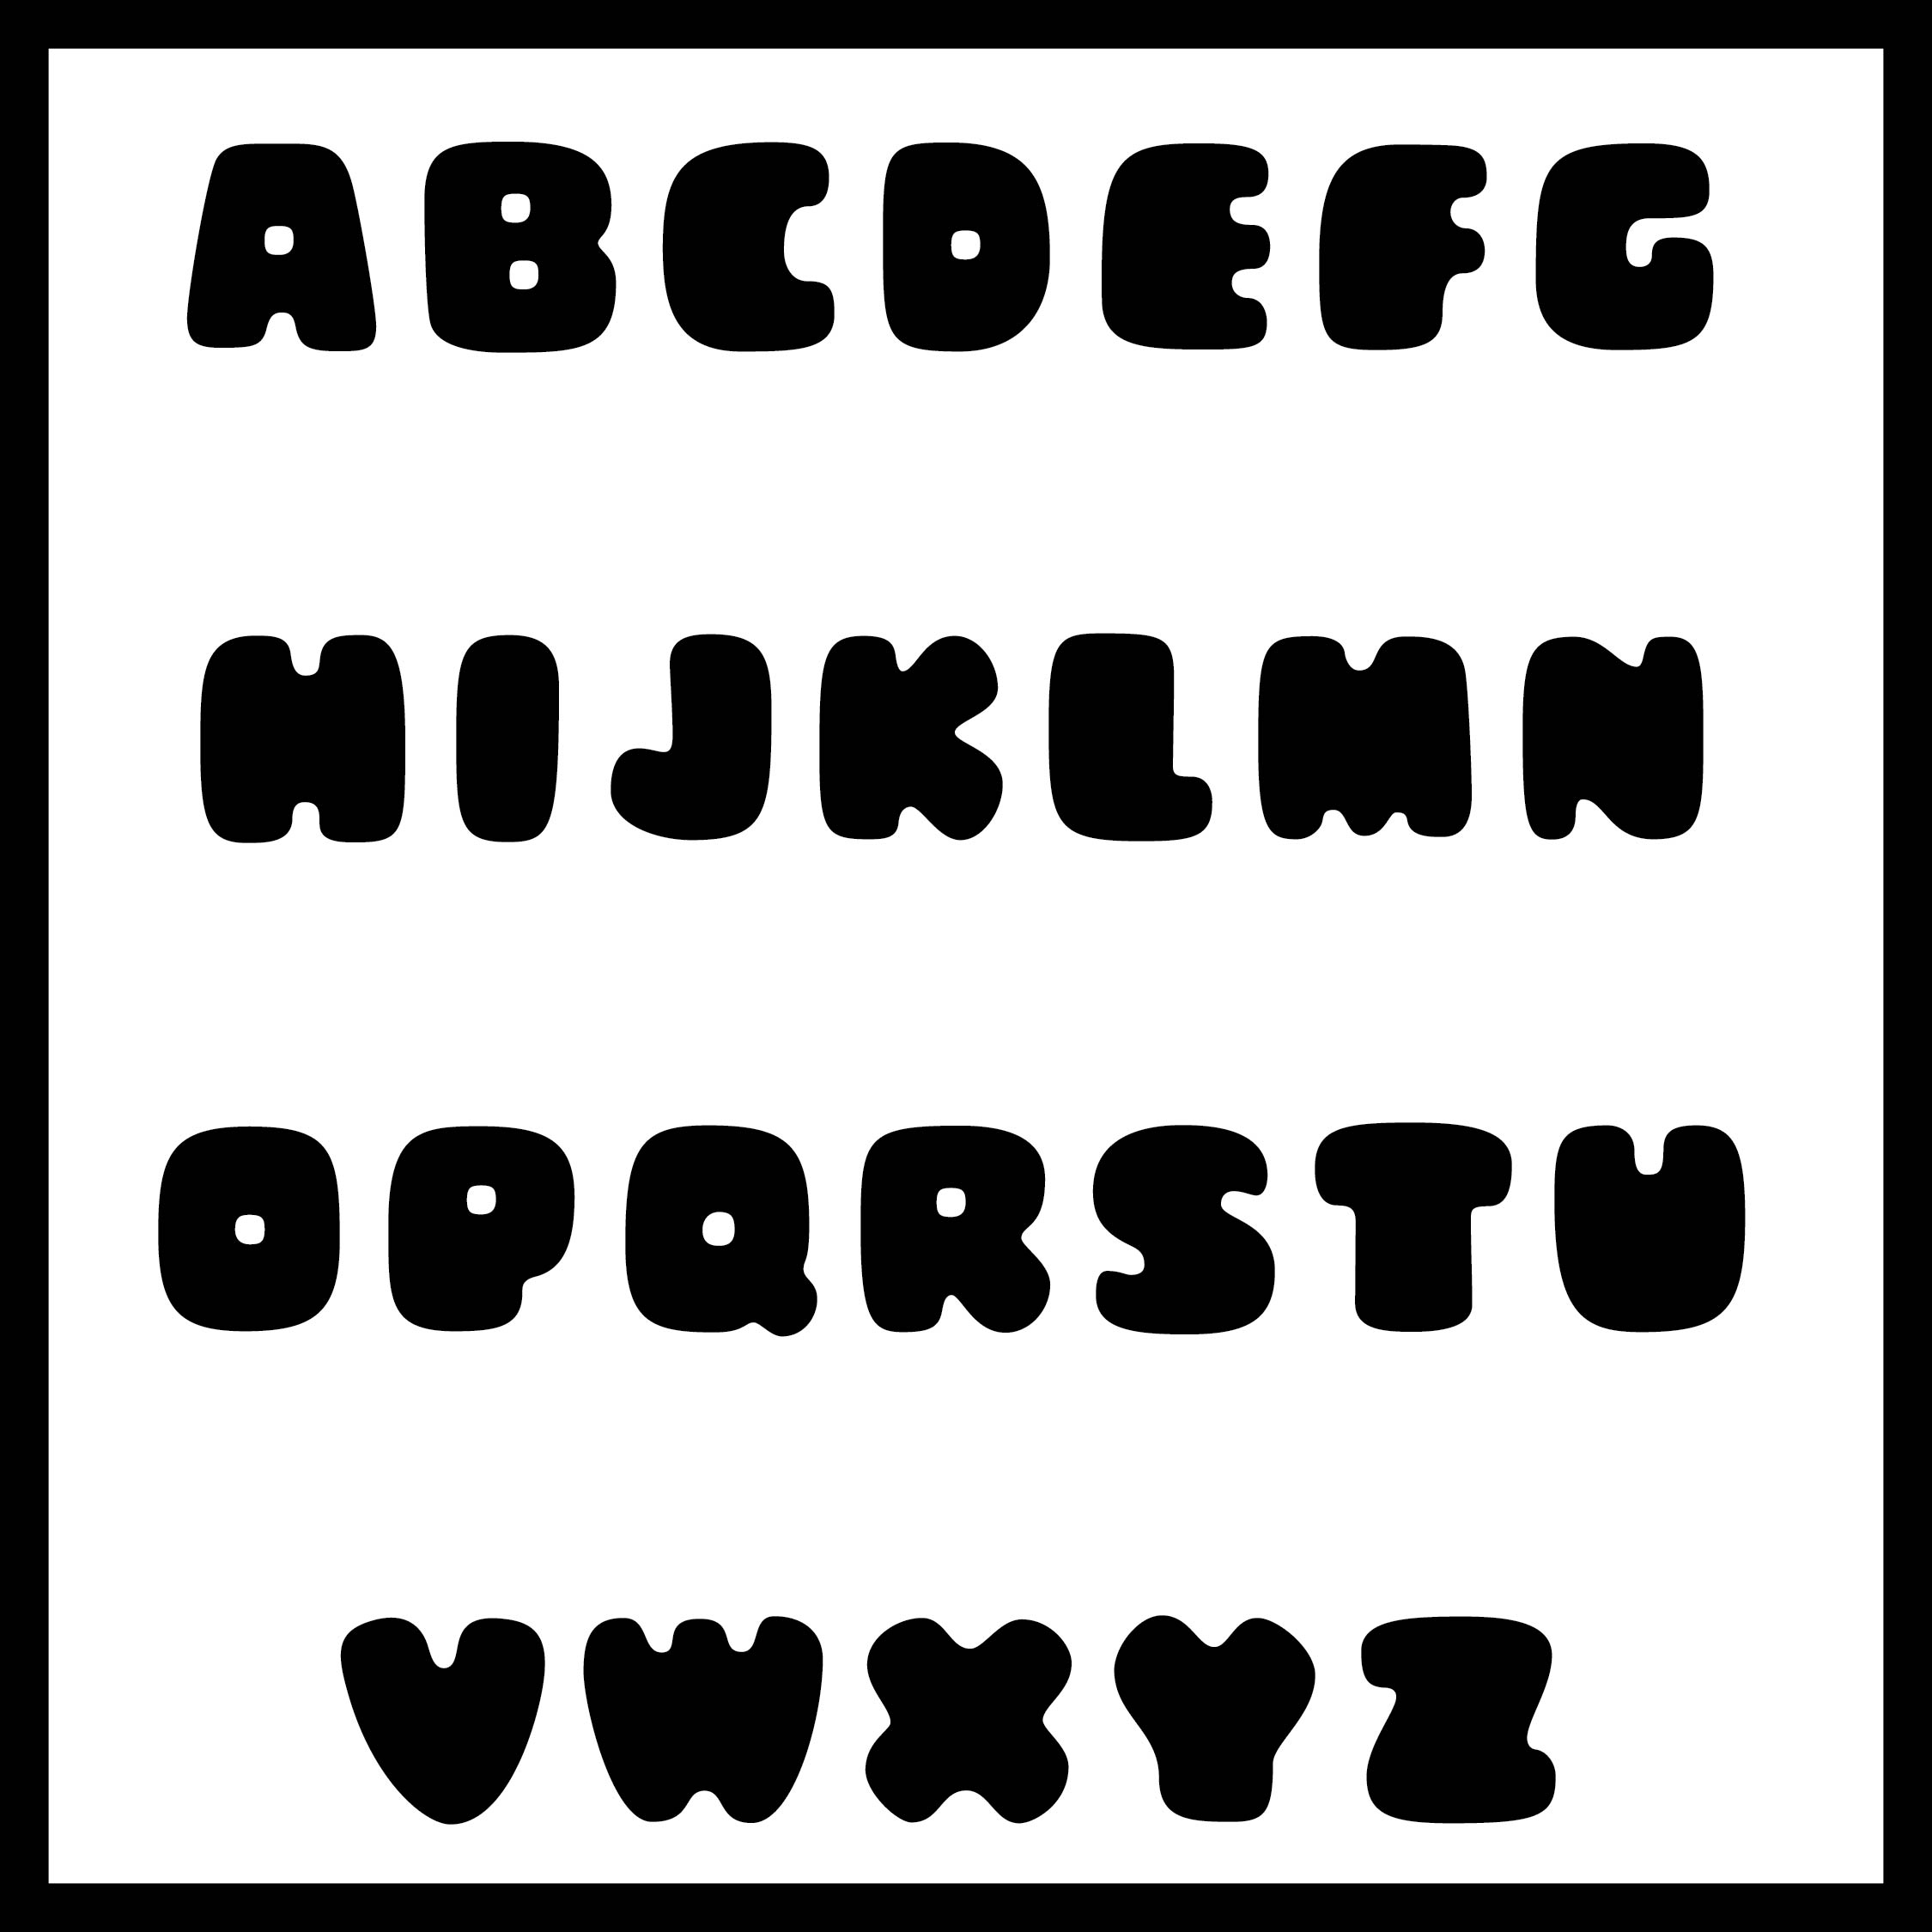 alphabet-letters-free-printable-stencils-to-cut-out-artistik-stencil-9-best-large-font